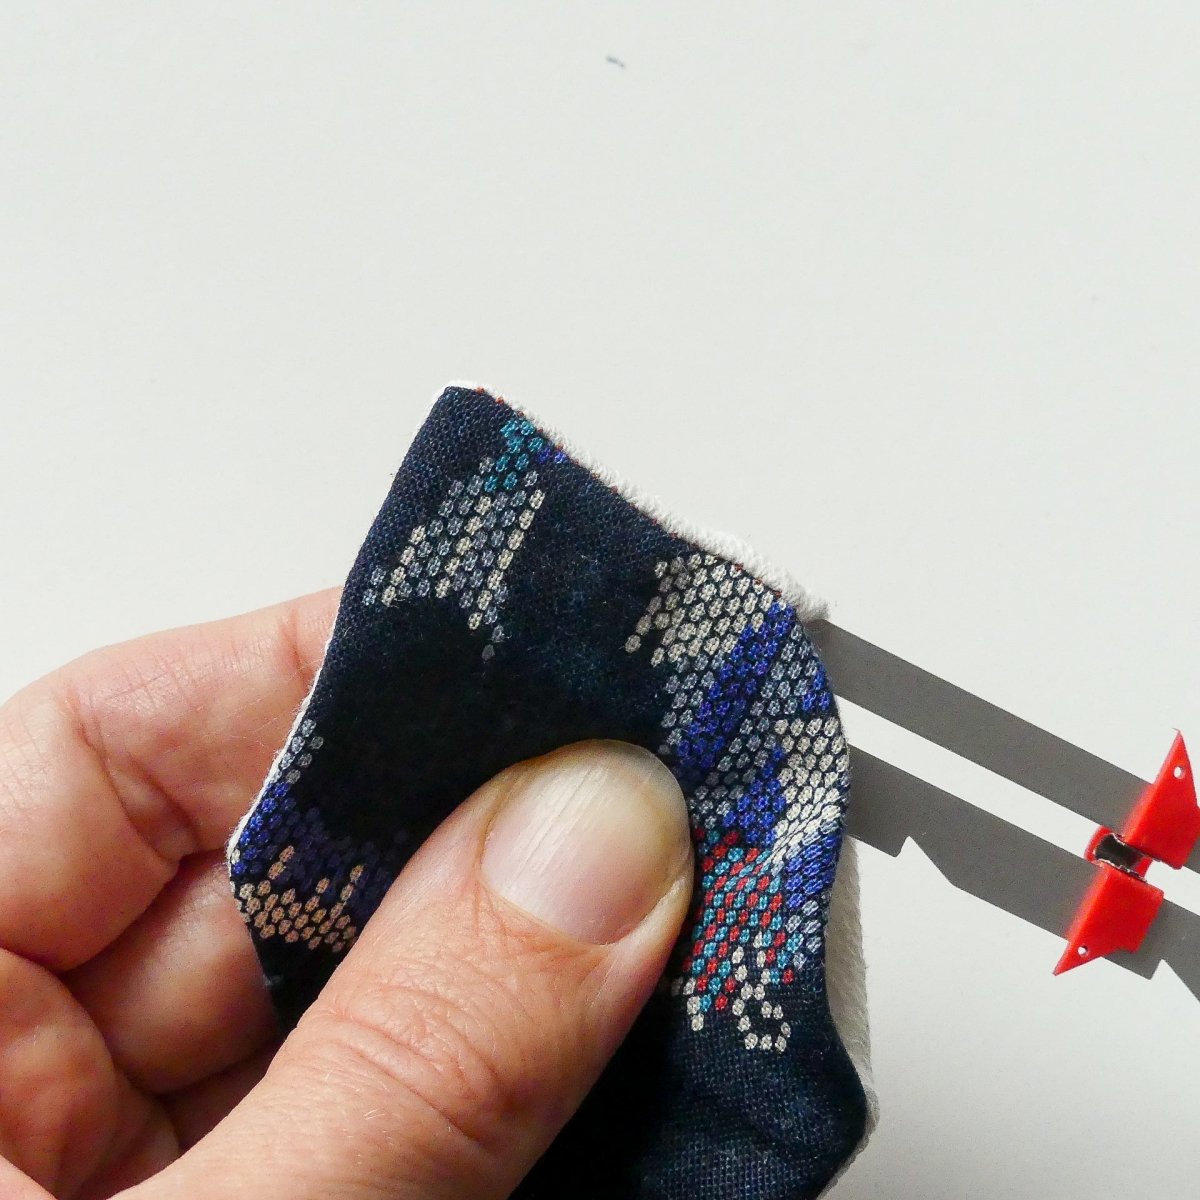 Tebru Sewing Gauge,Hemming Measuring Gauge,Sewing Gauge Knitting Crafting Sewing Hemming Measuring Sliding Gauge Measuring Tool